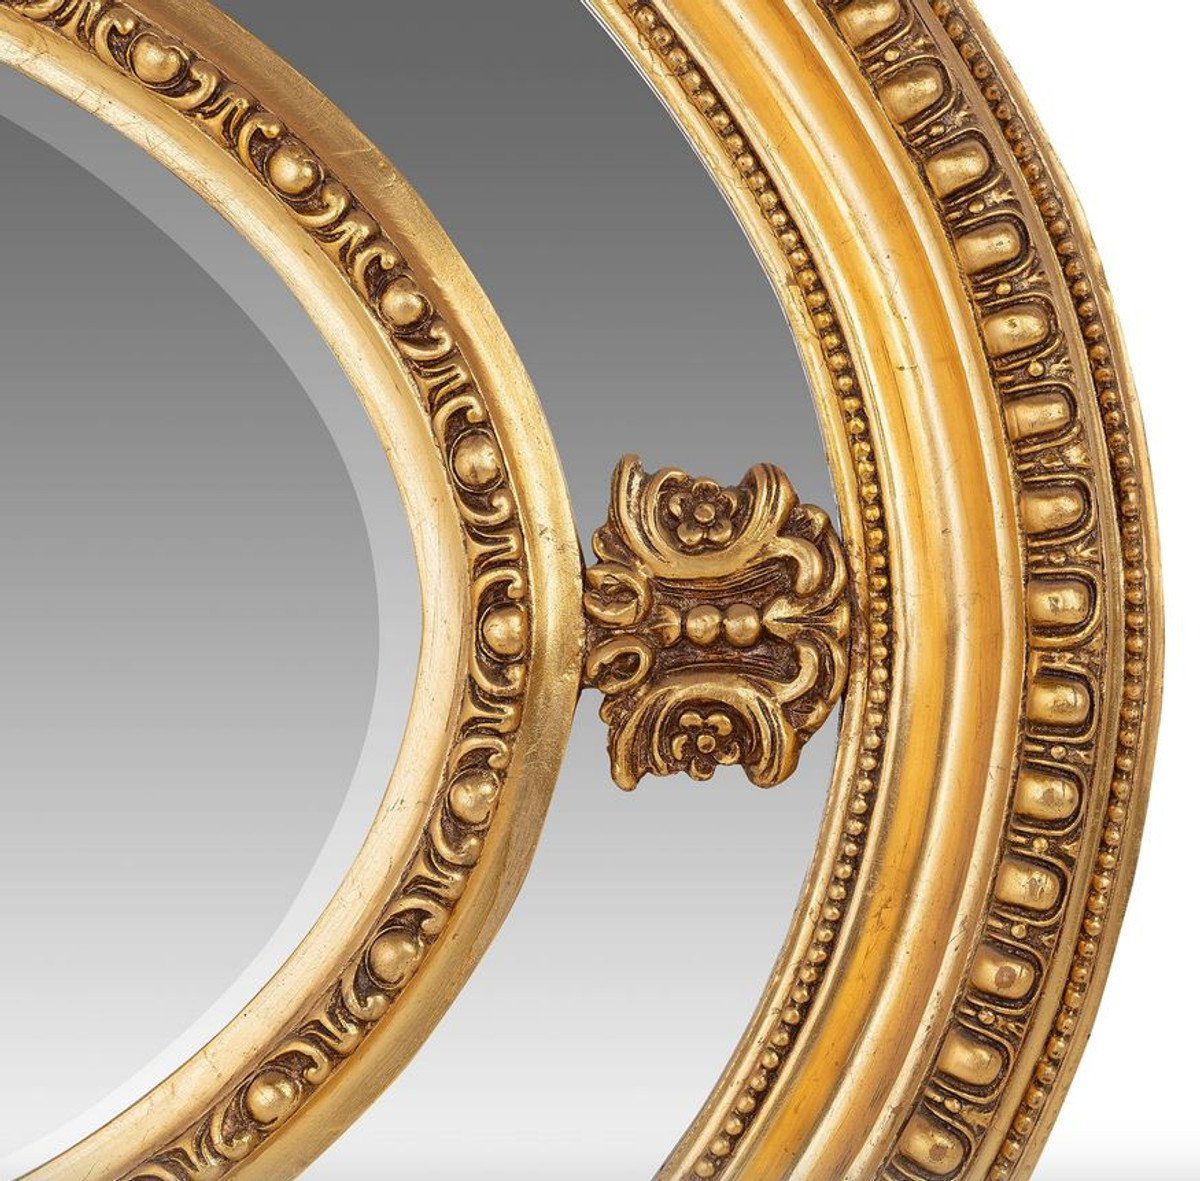 Casa Padrino Barockspiegel Luxus cm Barock Goldener Schwer Wandspiegel 120 - Oval Spiegel Massiv Gold und 